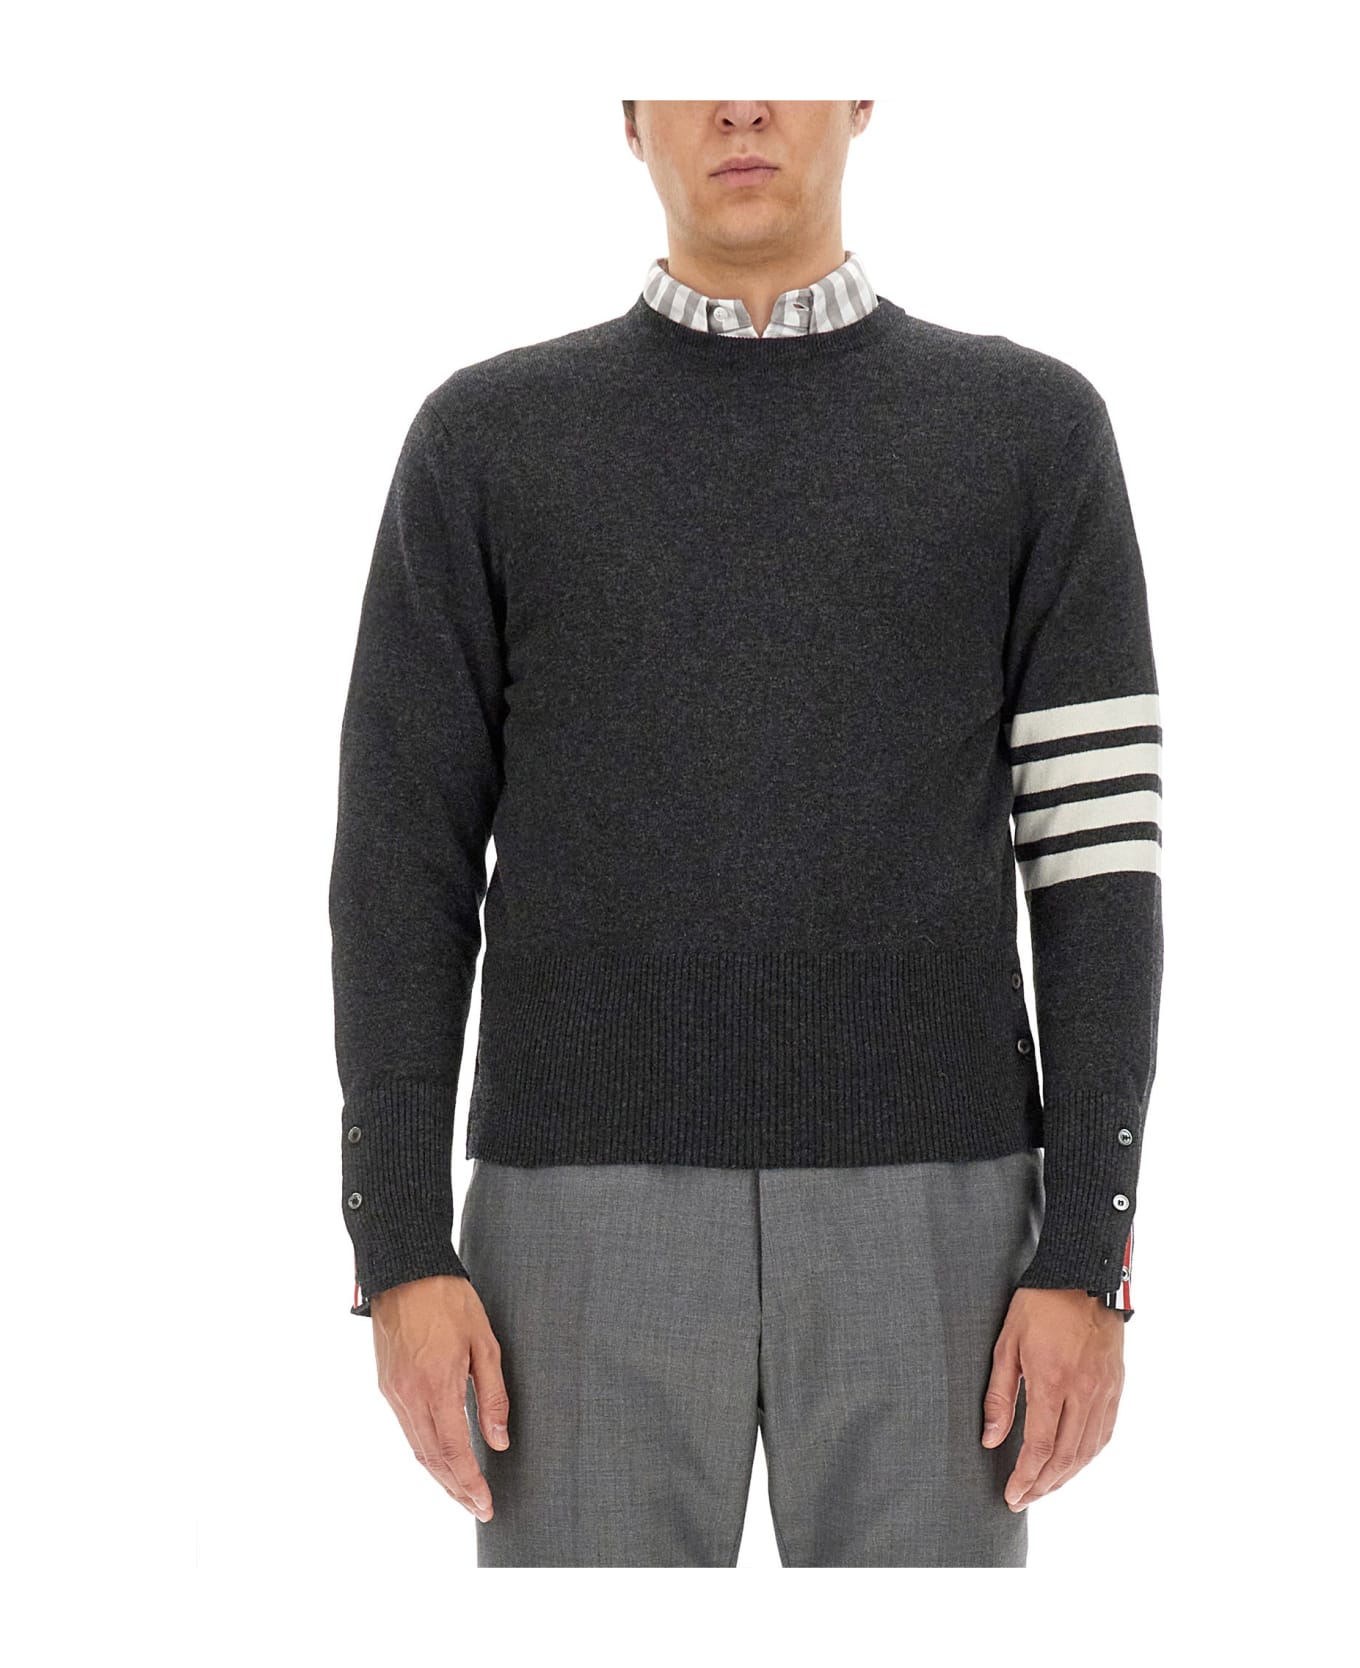 Thom Browne Cashmere Sweater - dark grey ニットウェア